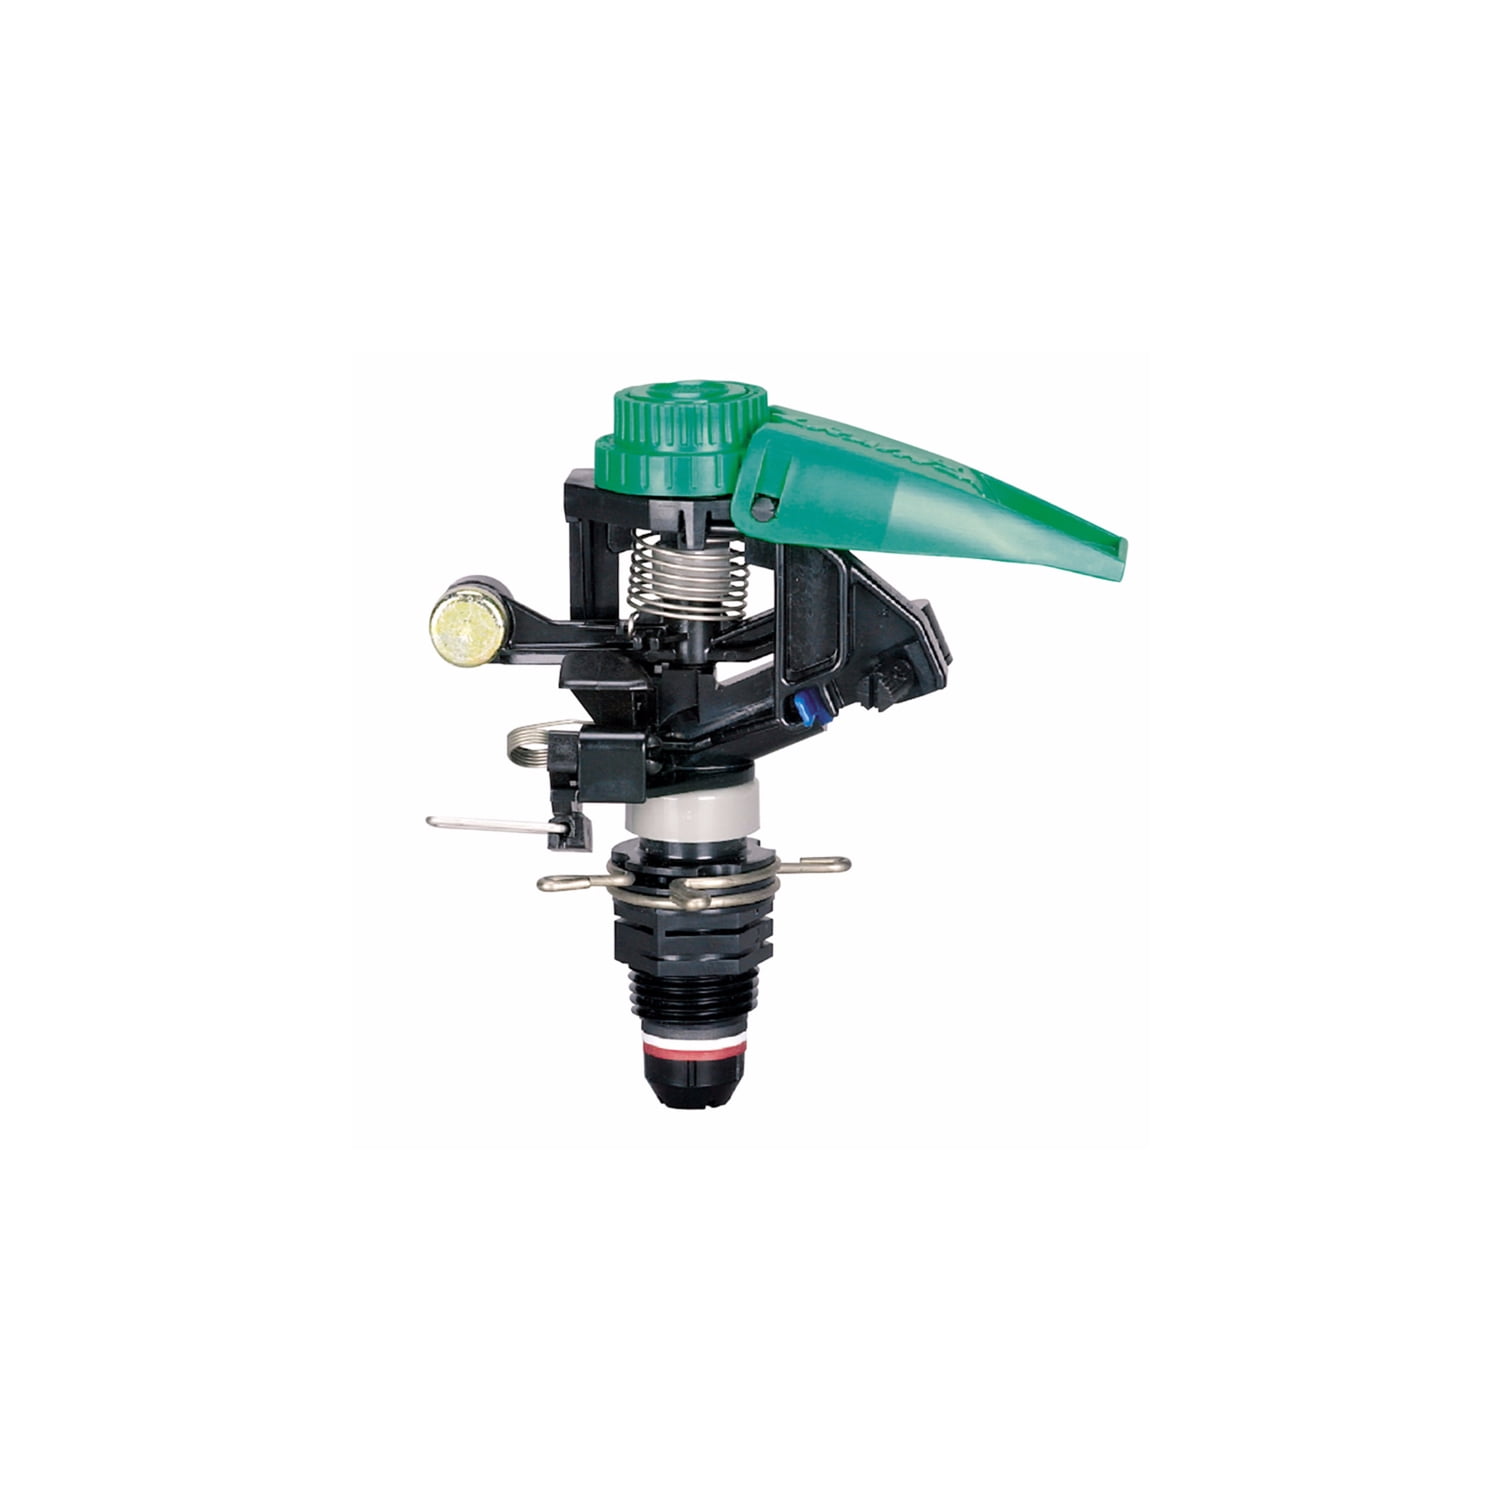 3PK Rainbird National Sls Pop-Up Impulse Sprinkler,No LG-3 